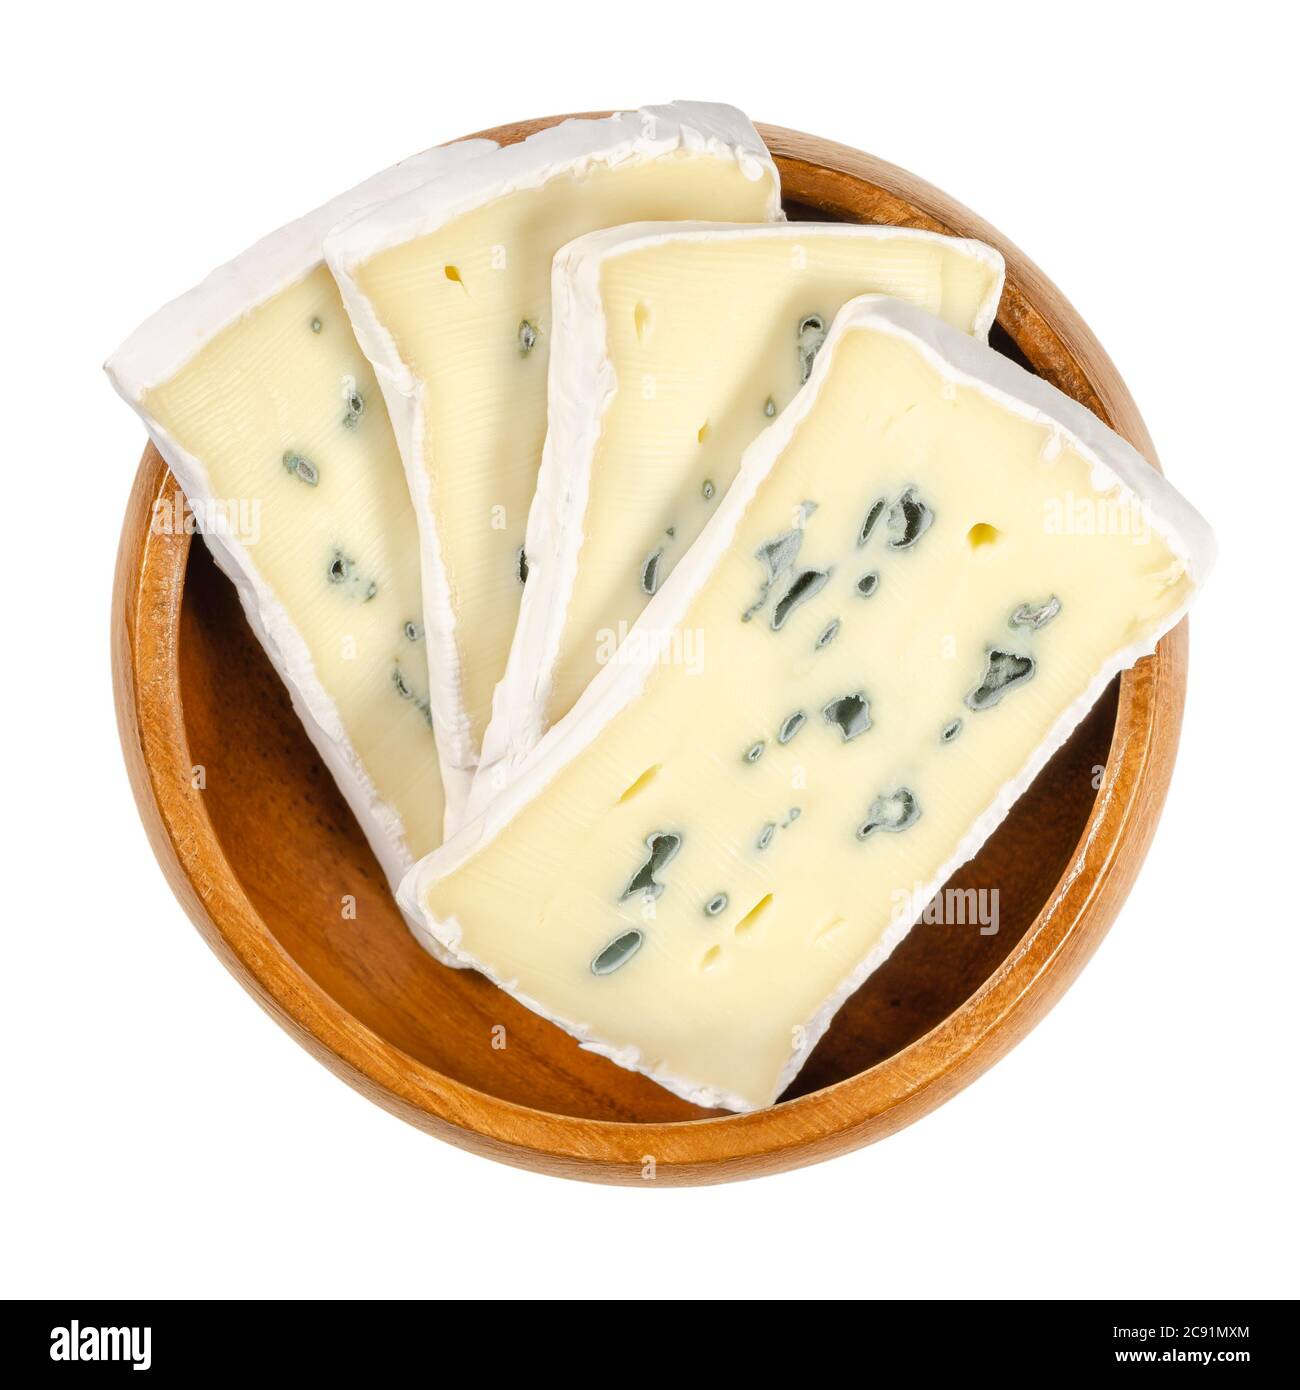 Fette di formaggio morbido con muffa bianca e blu in ciotola di legno. Formaggio cremoso, stagionato in superficie con fungo bianco e all'interno con uno blu. Foto Stock